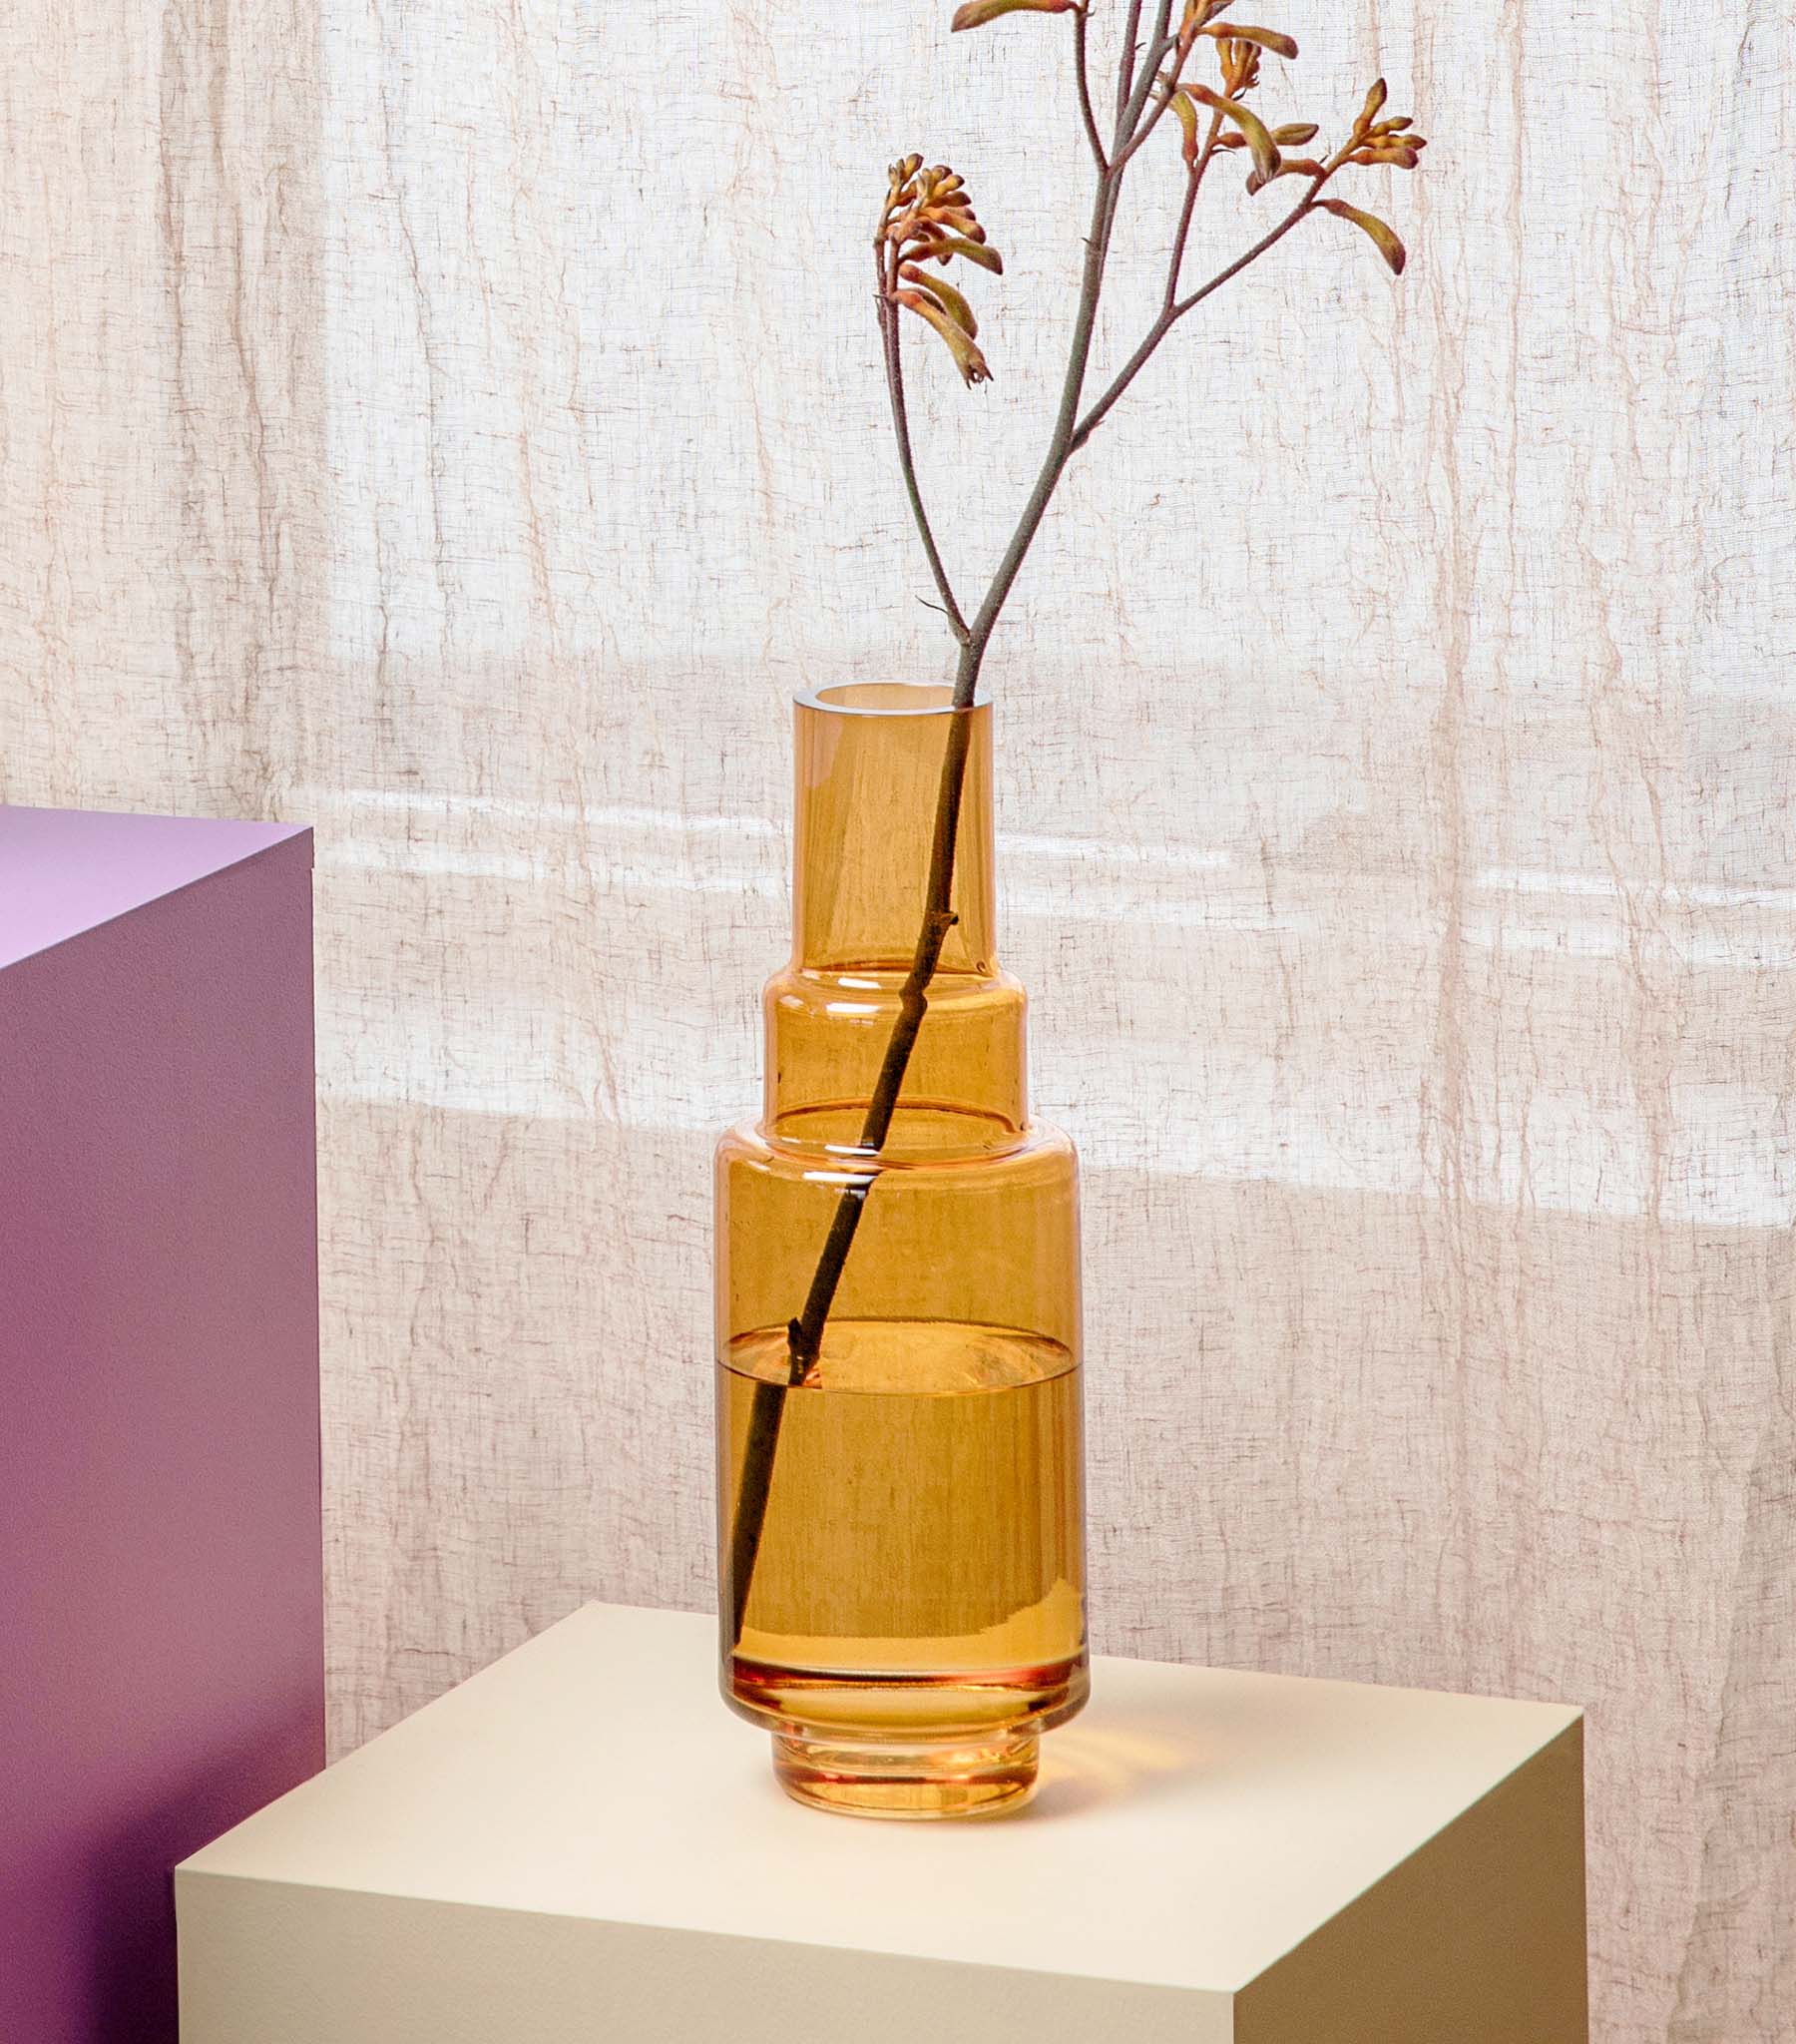 Layer vase 01, Ravfarvet, mundblæst glas - Stences 100101